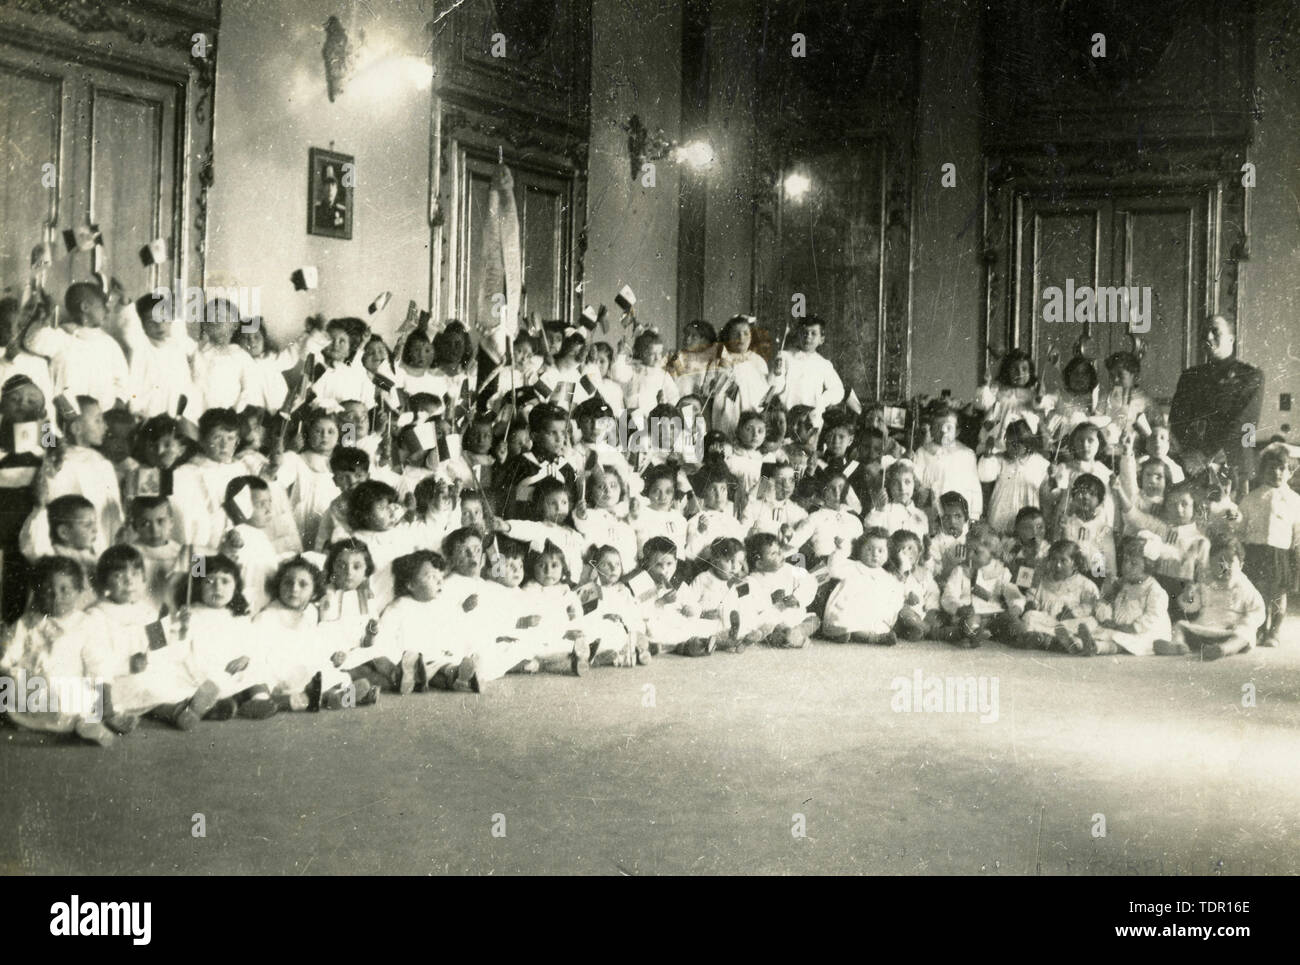 Kinder gekleidet gleichermaßen während des Faschismus, Italien 1920 s Stockfoto